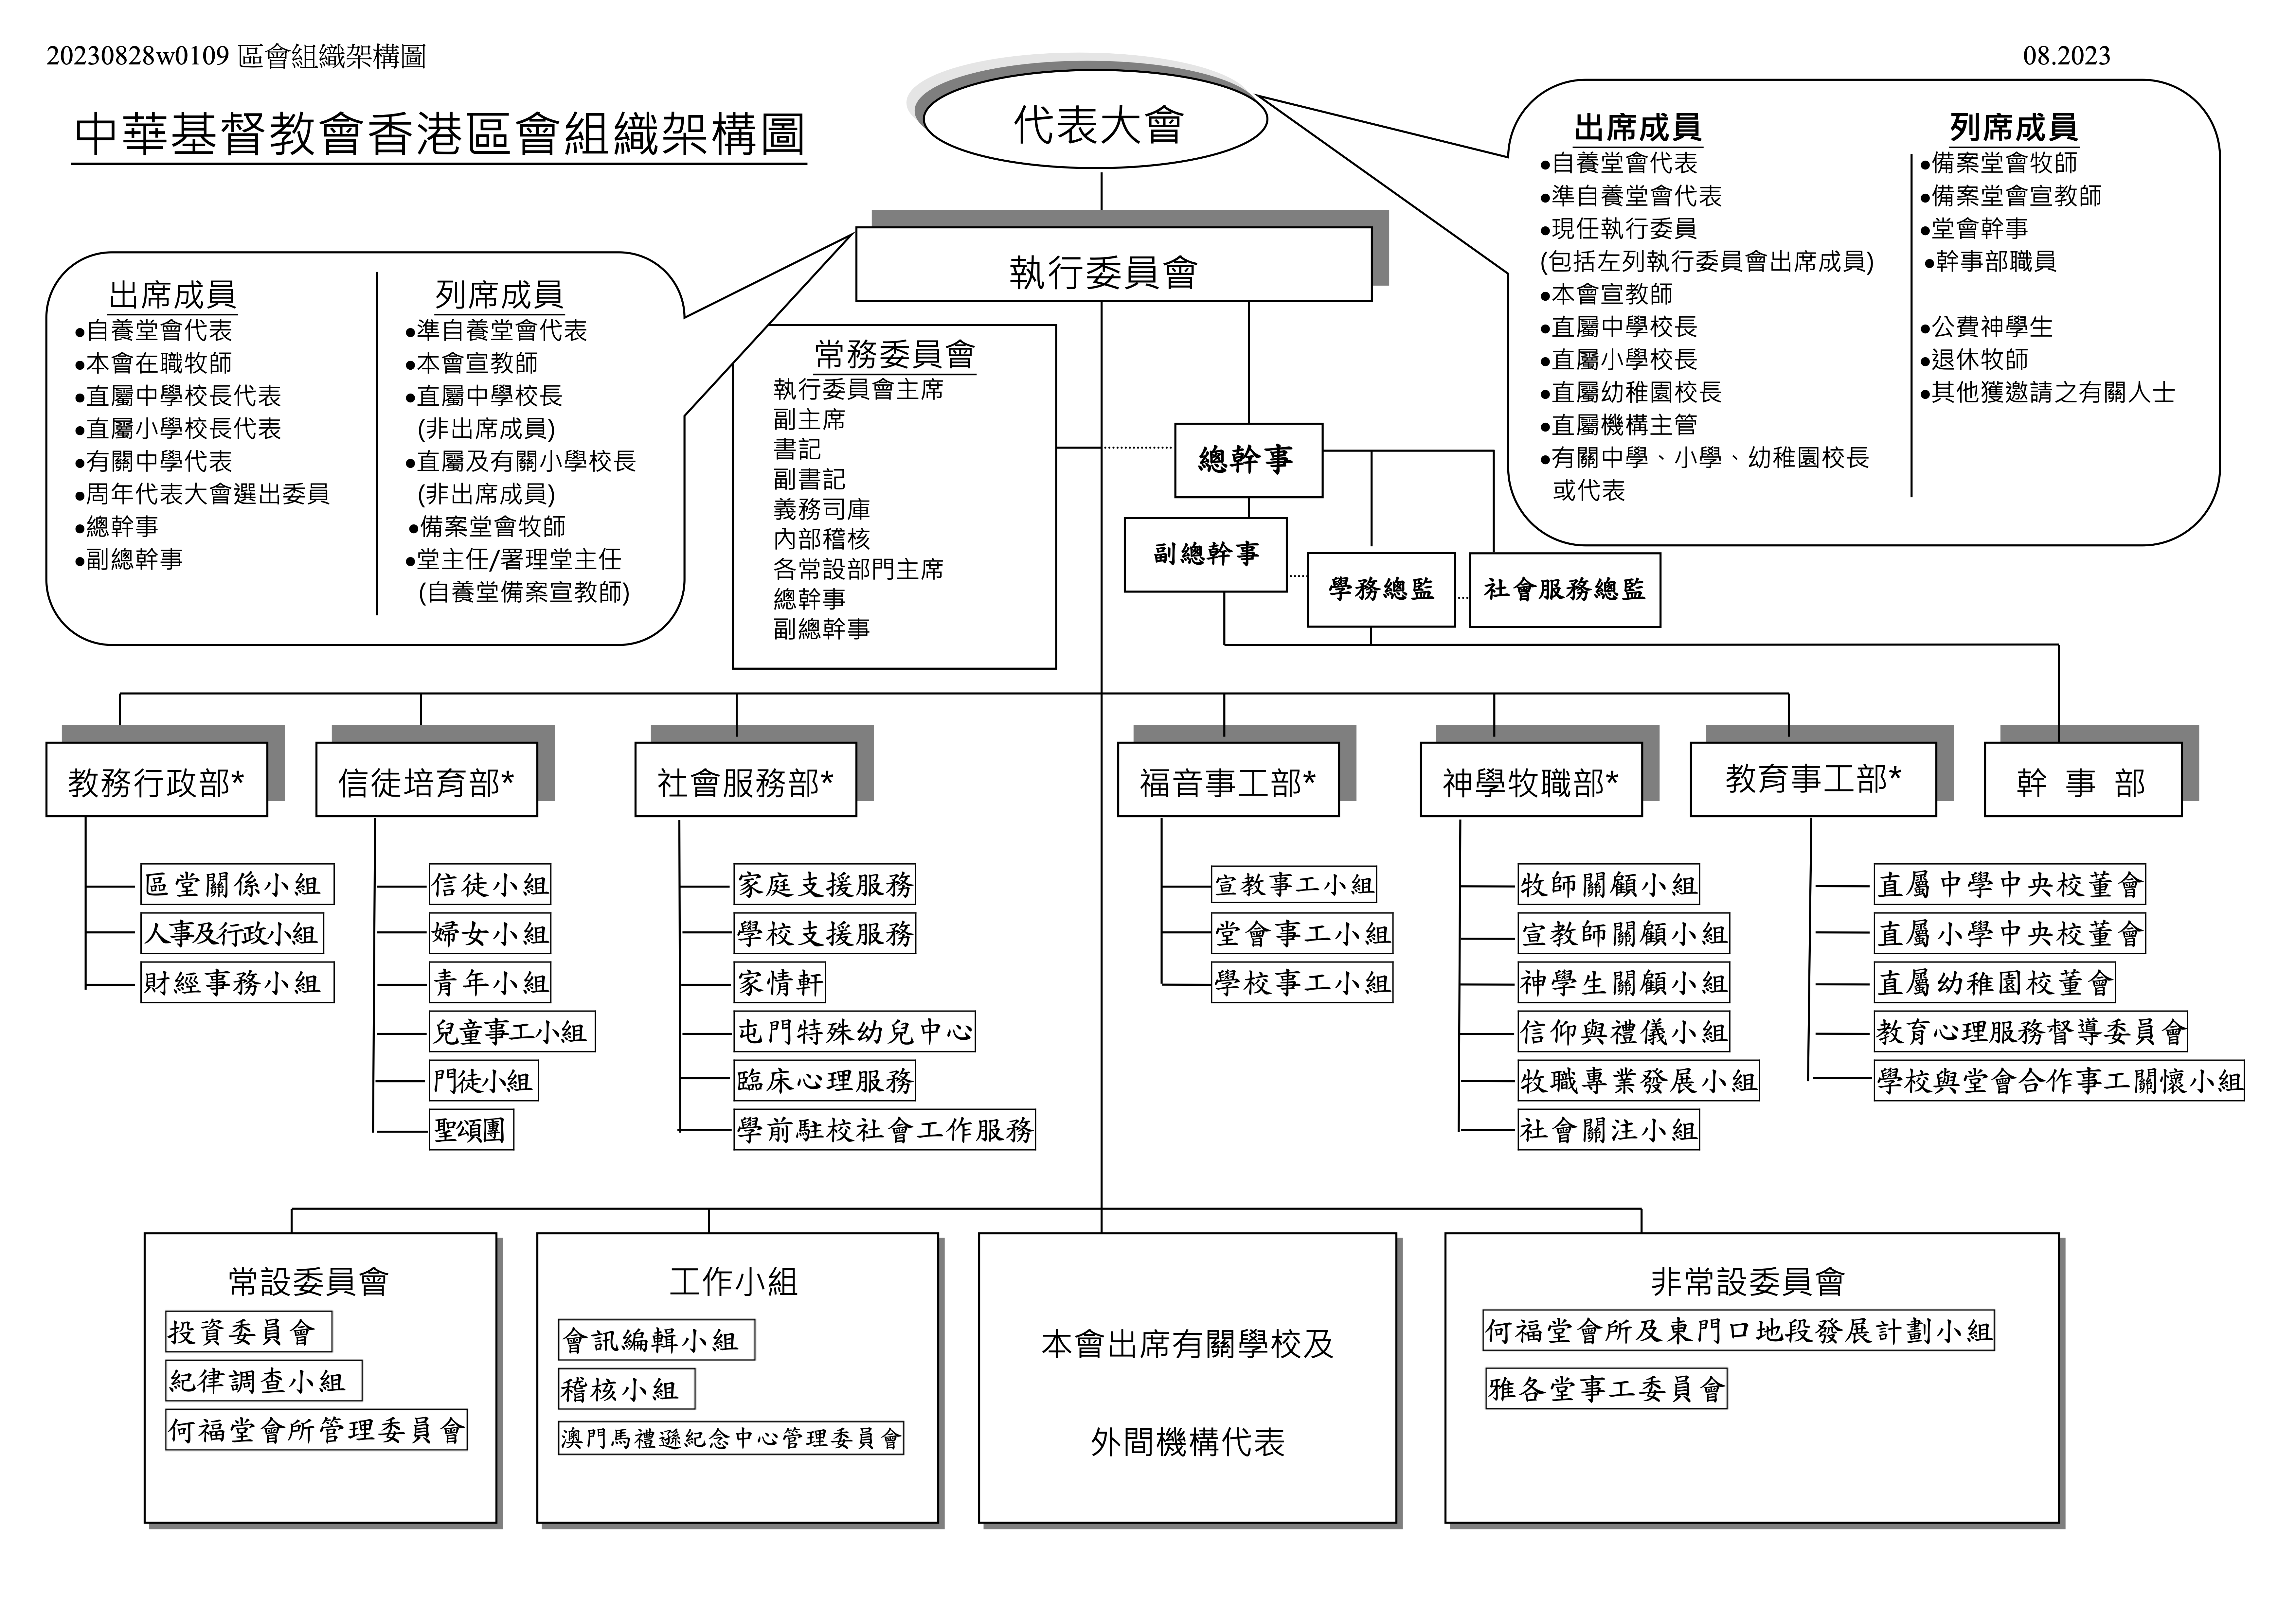 中華基督教會香港區會組織架構圖